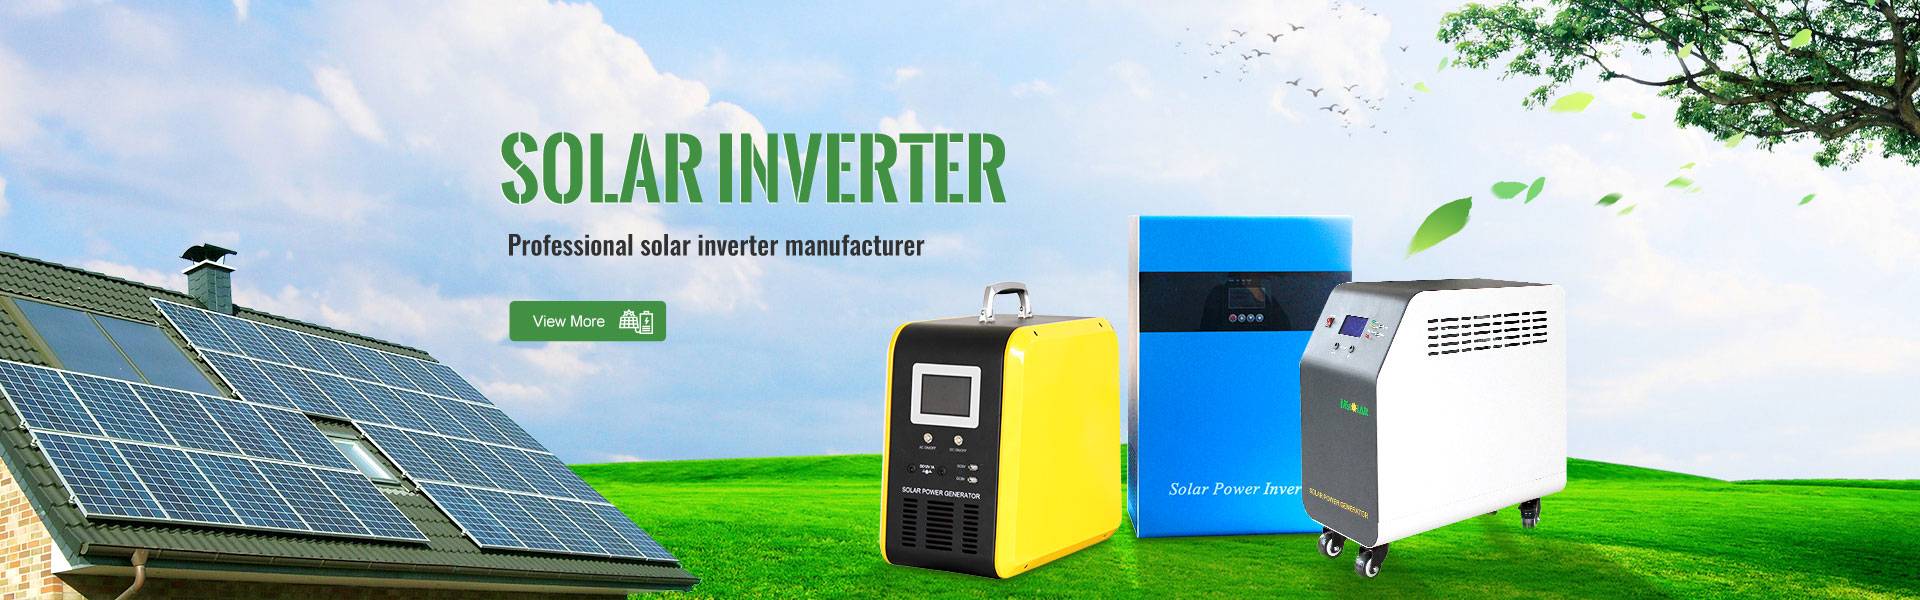 Solar inverter